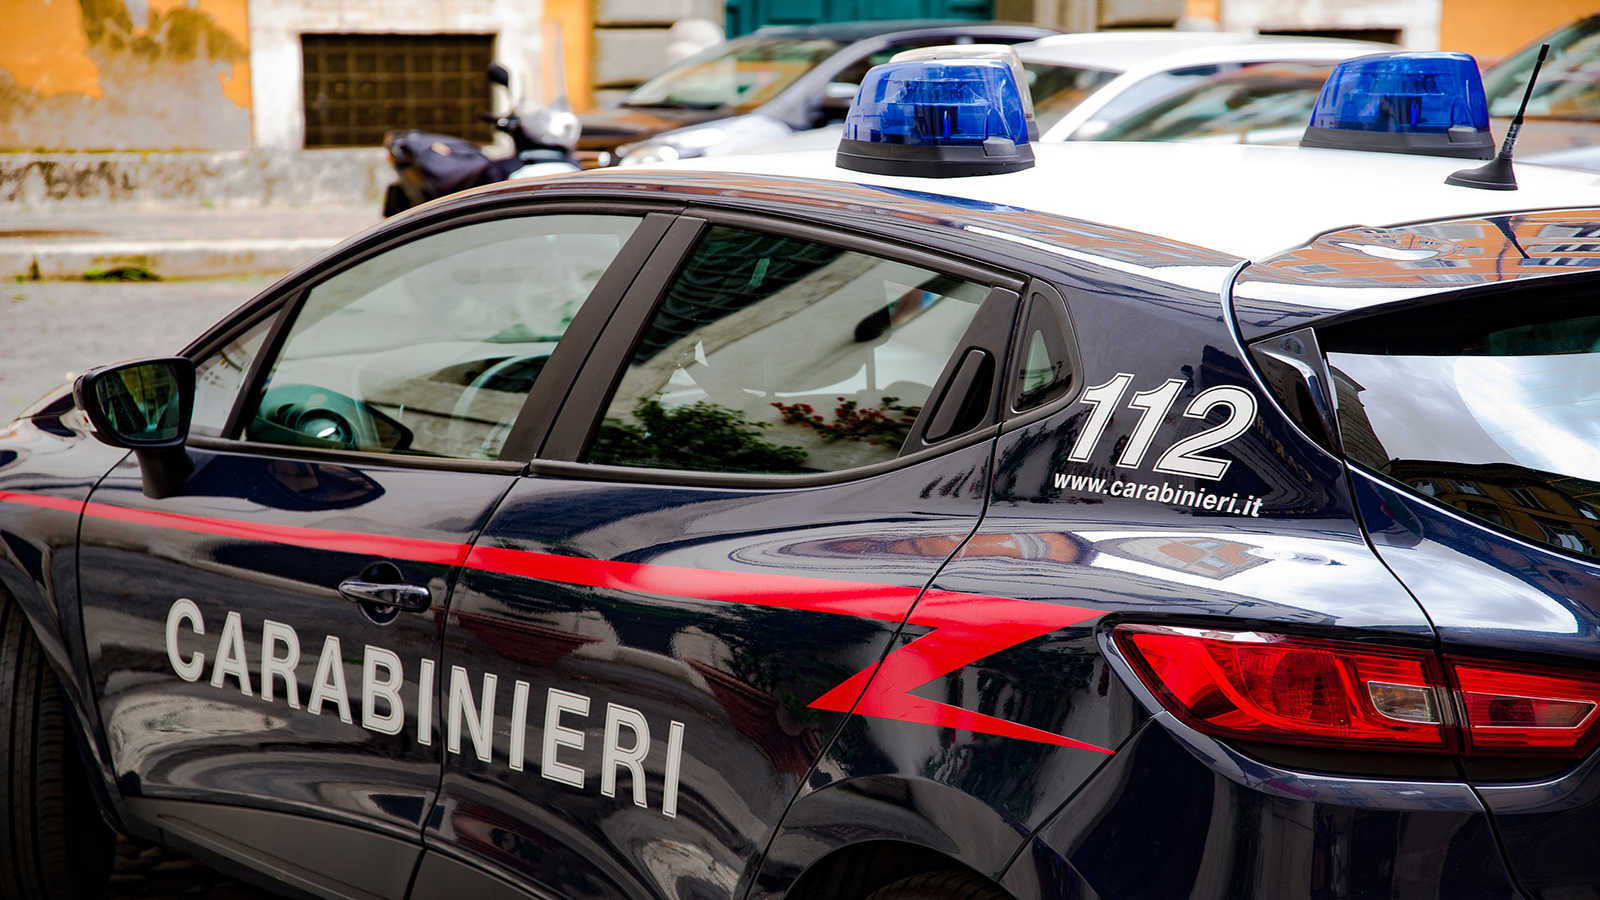 Polițiștii italieni au creat o diversiune inedită pentru a salva o româncă din mâinile soțului. Bărbatul o obliga să se prostitueze